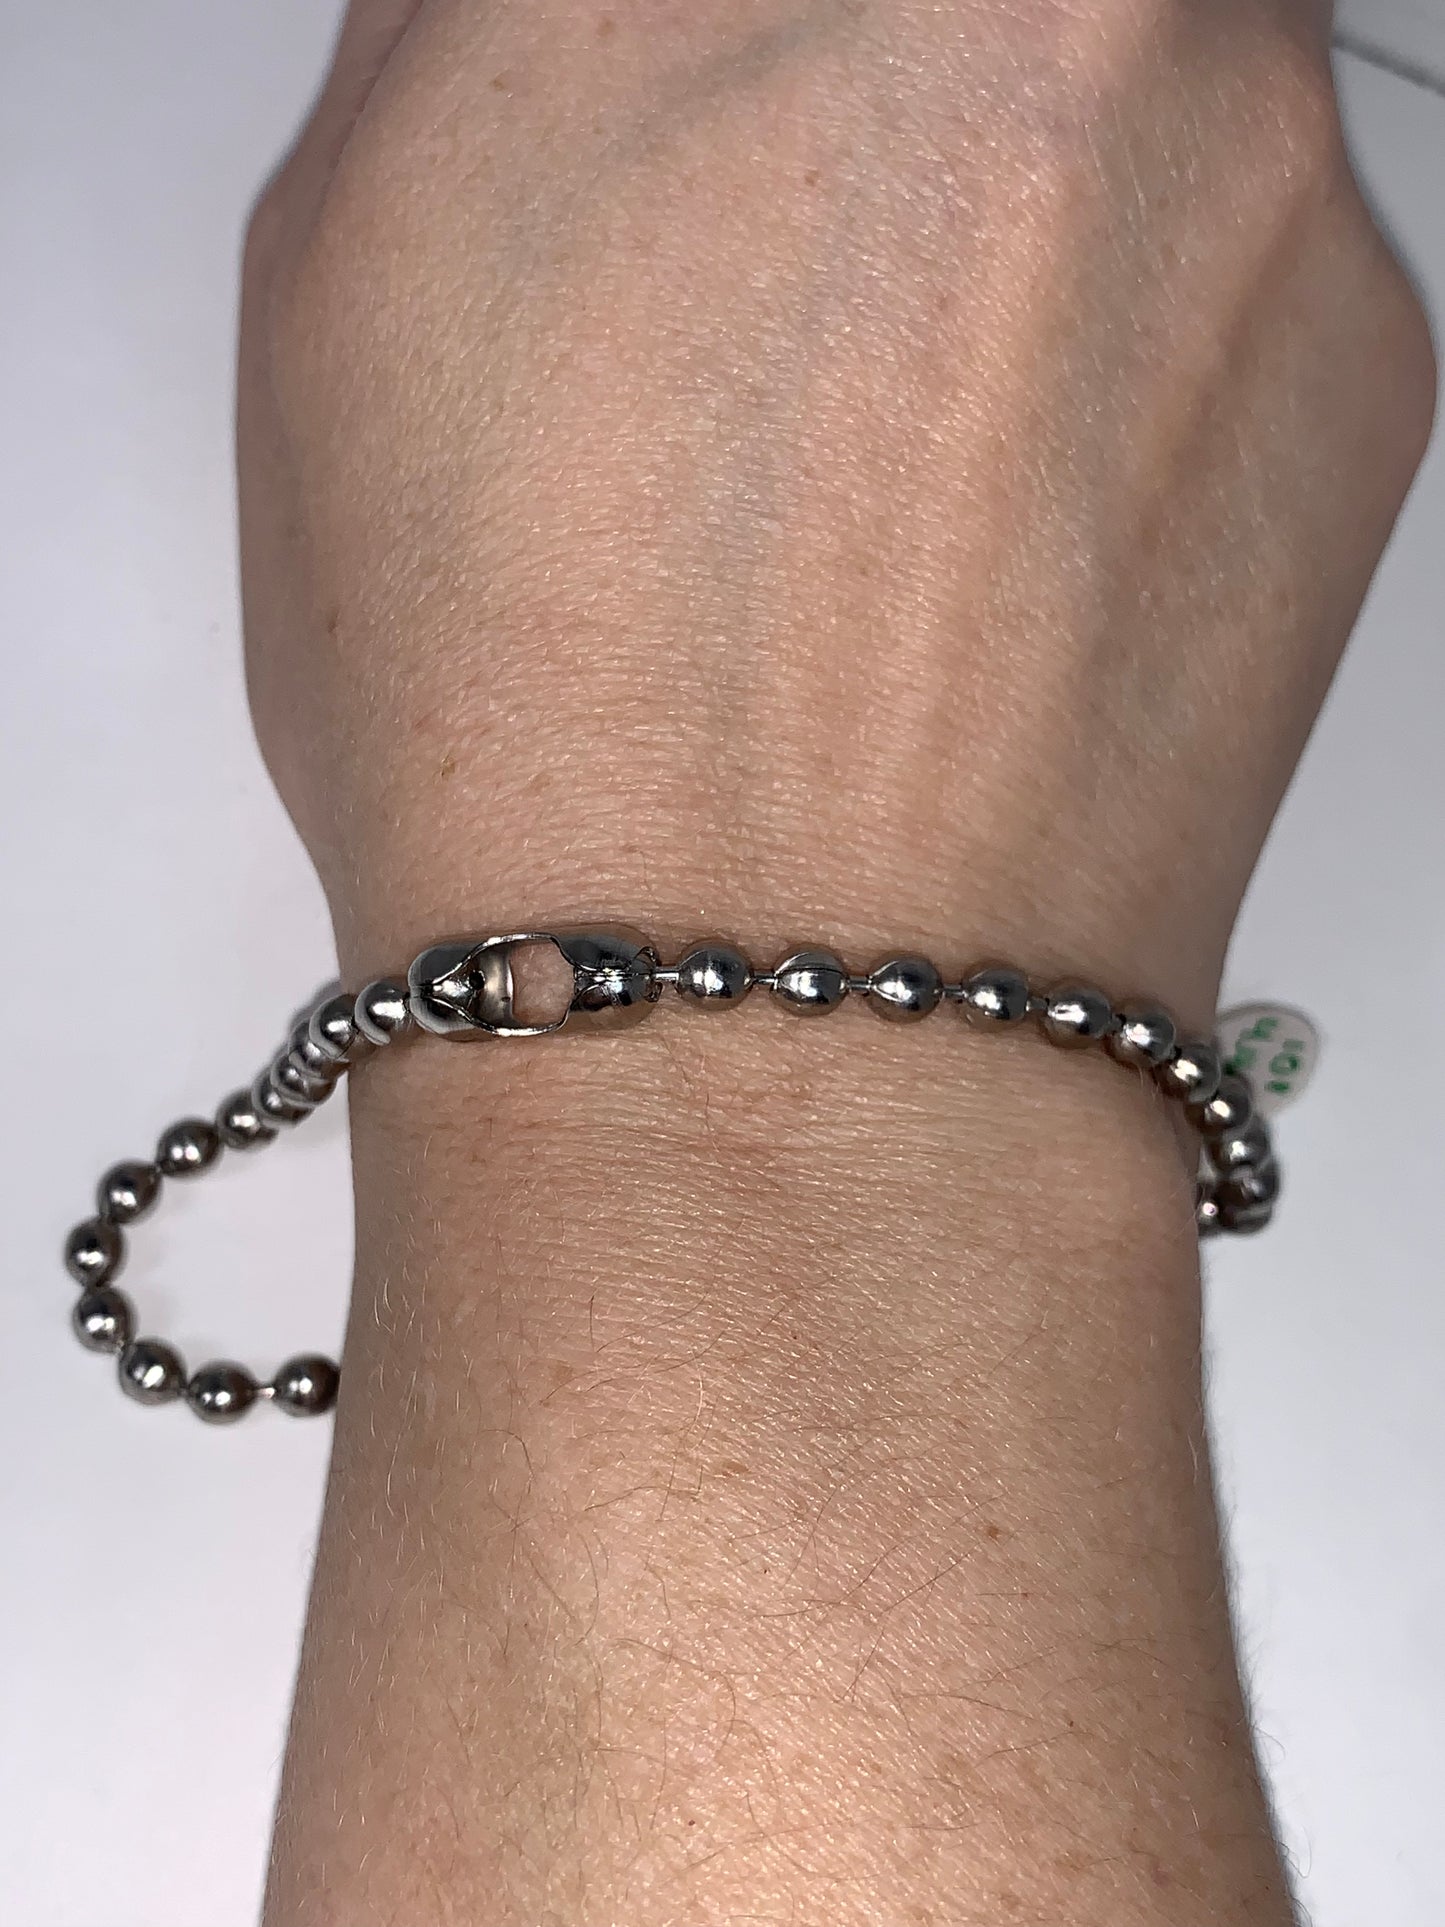 10" 4.4mm Ball Chain Bracelet